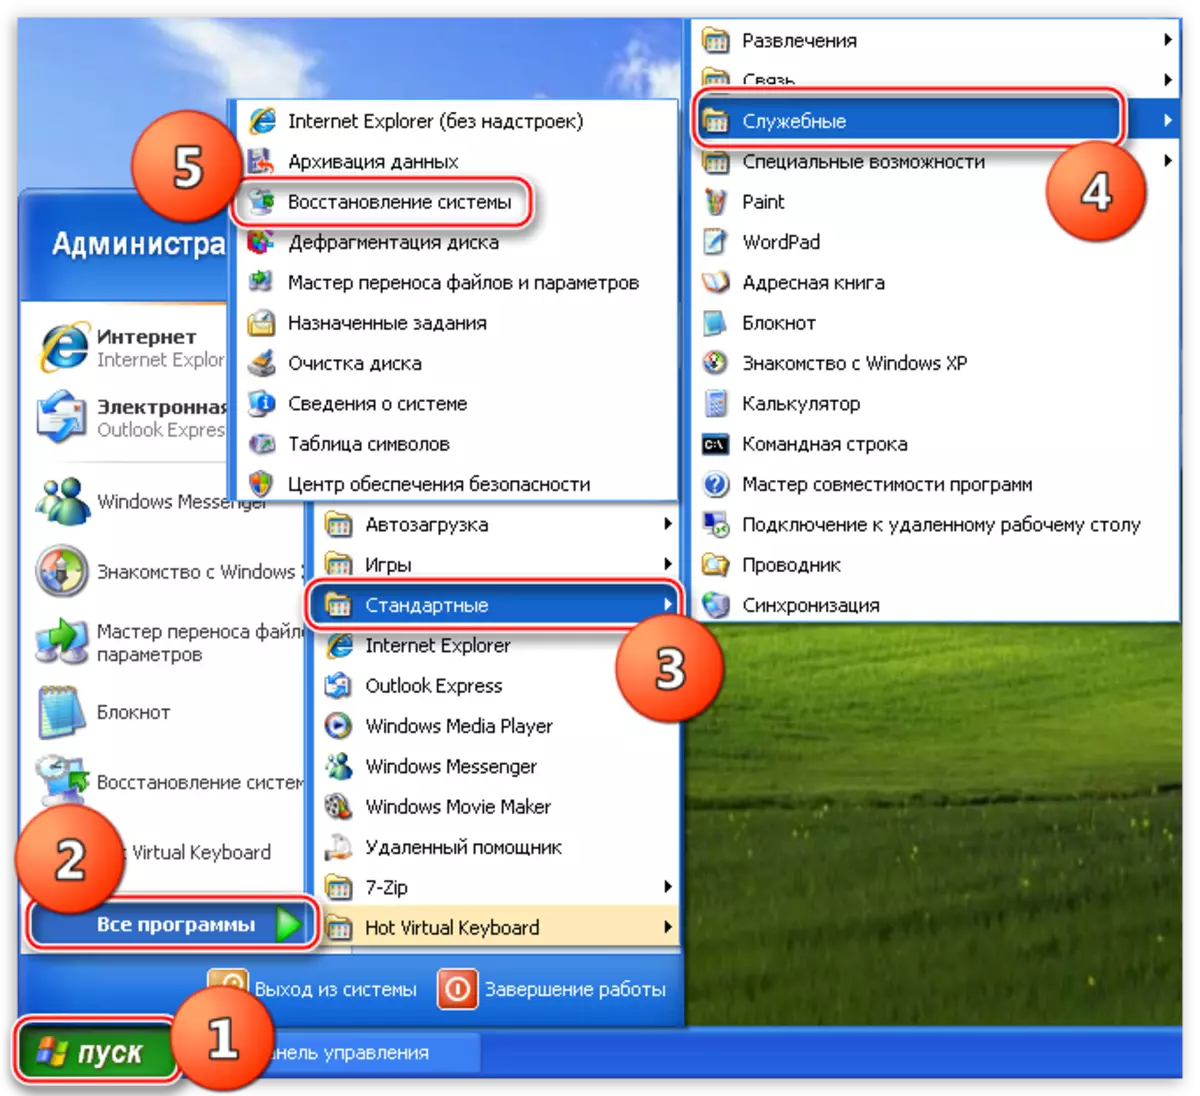 الوصول إلى أداة استعادة النظام باستخدام قائمة ابدأ في نظام التشغيل ويندوز XP